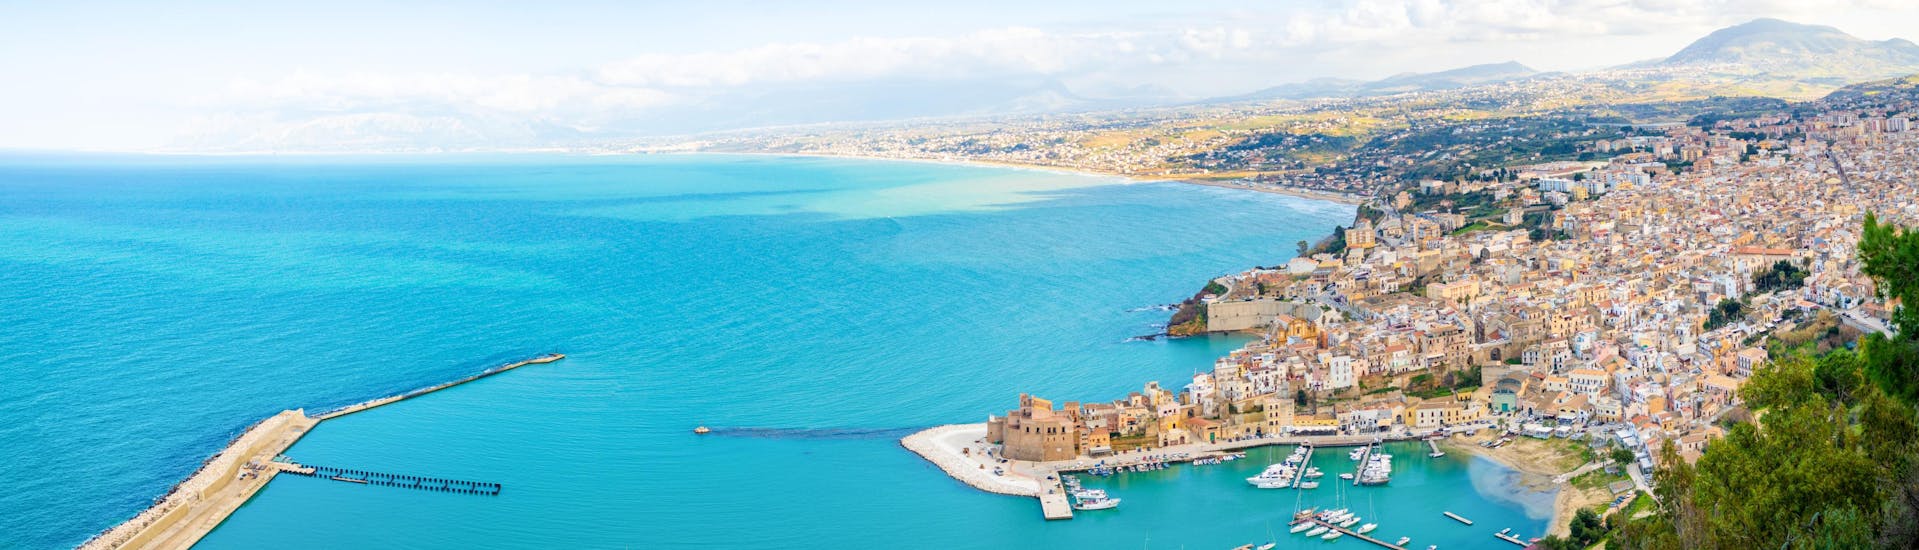 Vue aérienne de Castellammare del Golfo, un point de départ populaire pour les balades en bateau en Sicile.